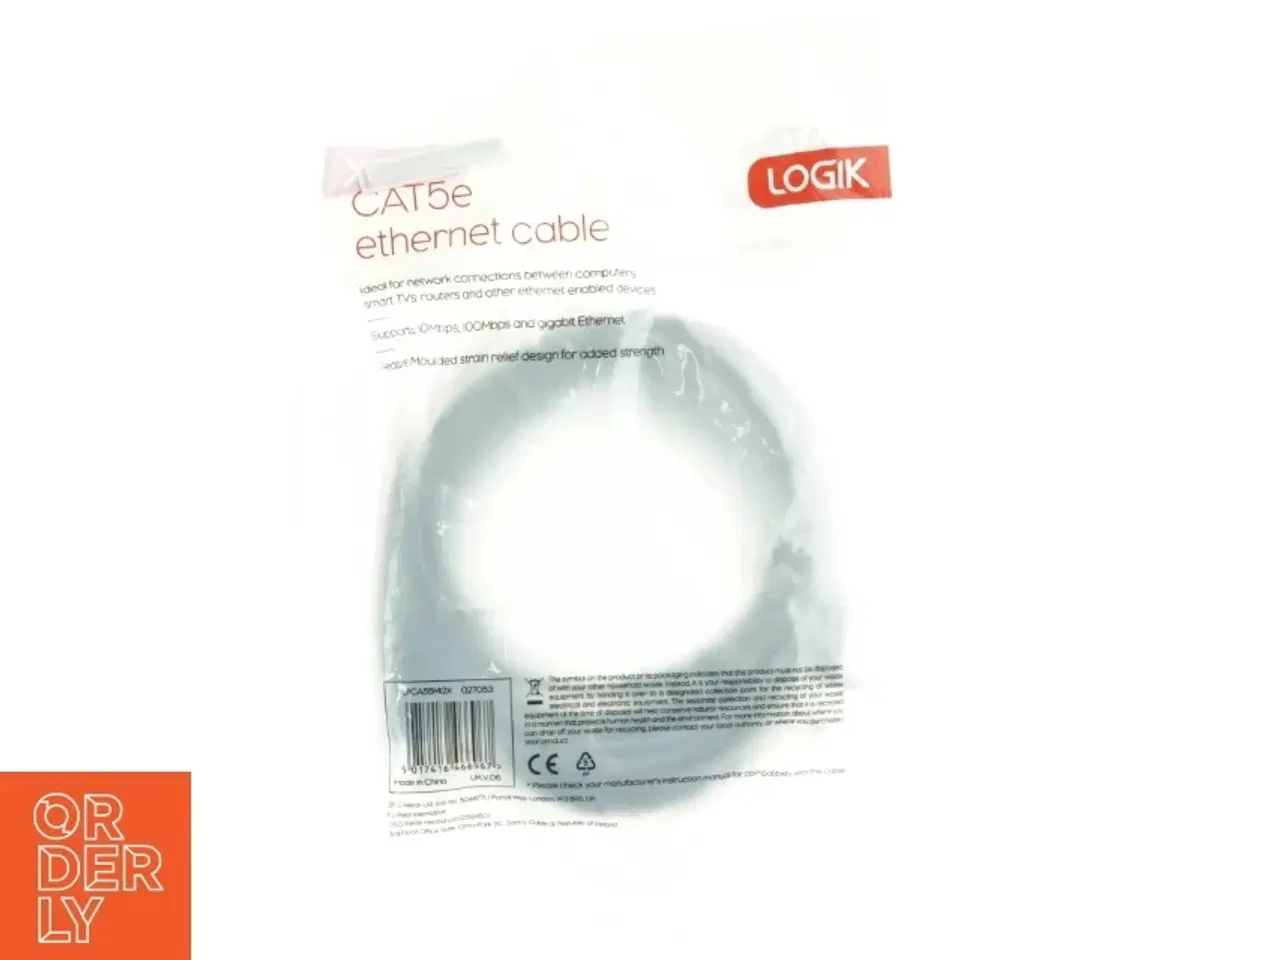 Billede 2 - CAT5e Ethernet kabel fra Logik (str. 500 cm)